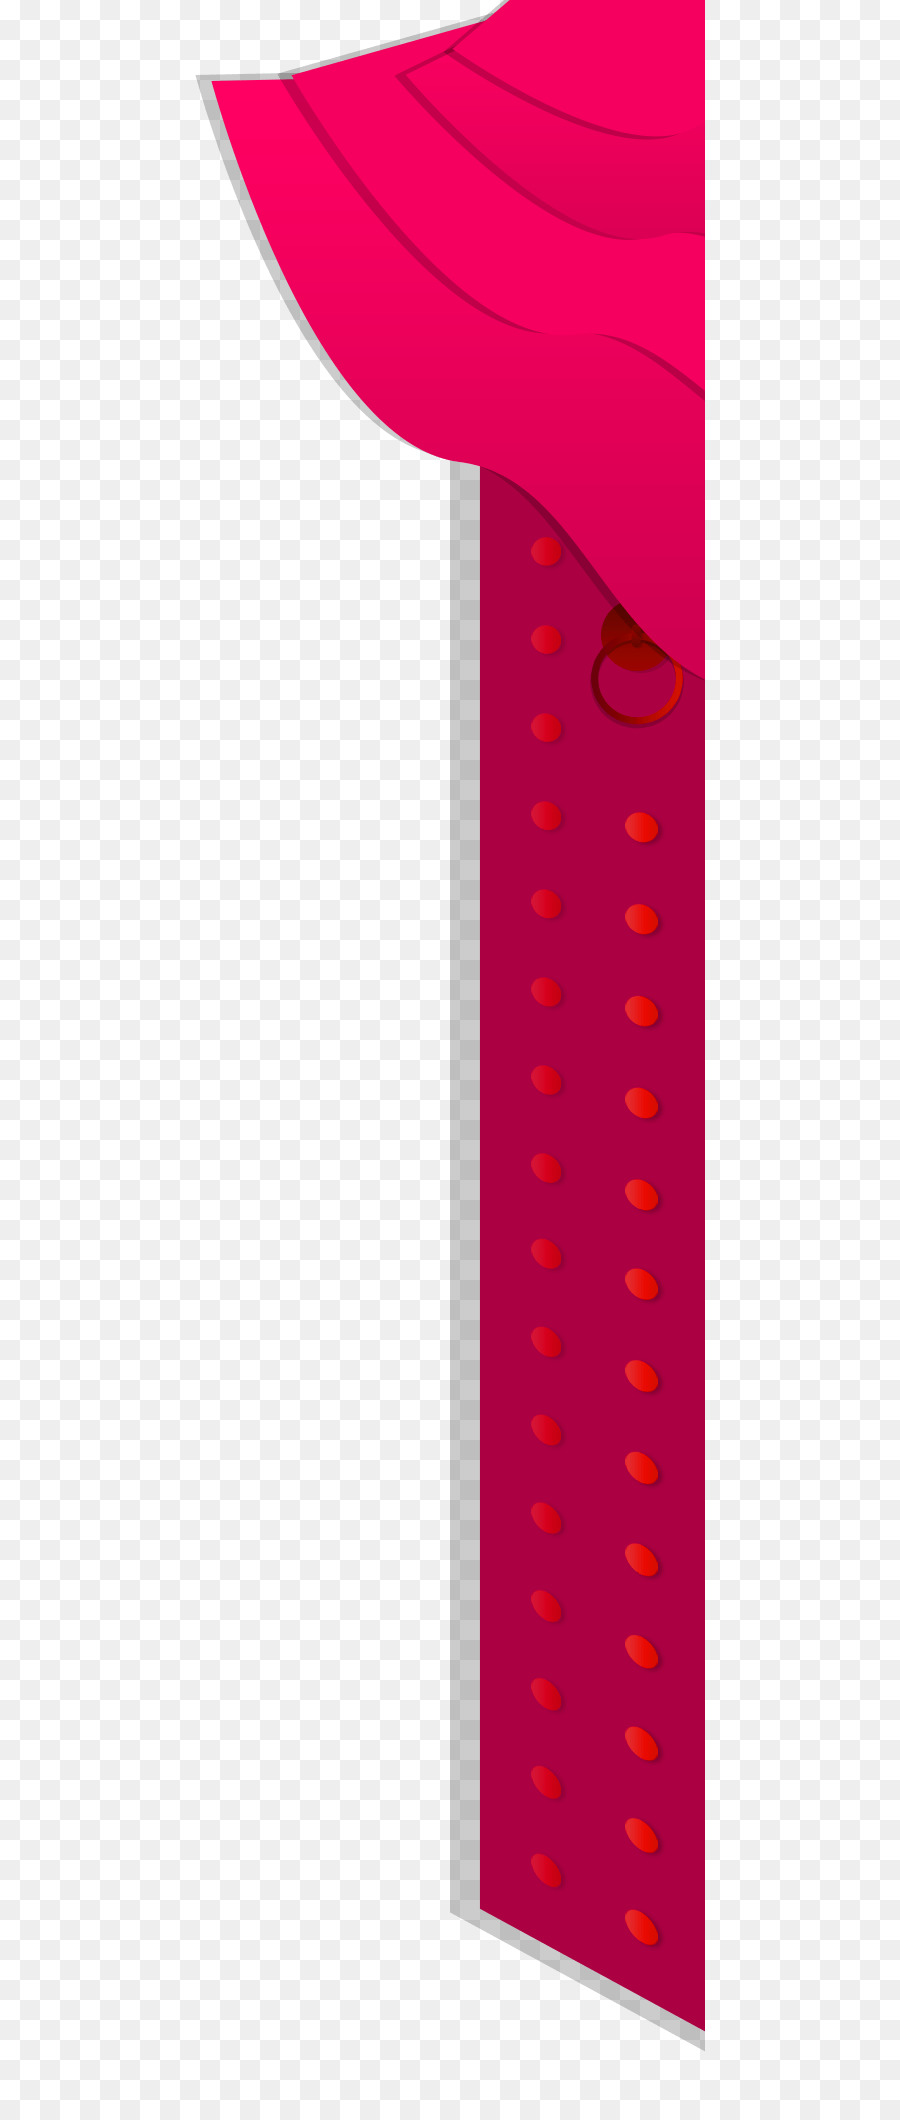 Papier-Grafik-design-Struktur-Muster - Rote chinesische wind-Vorhang-Tür-Dekoration Muster